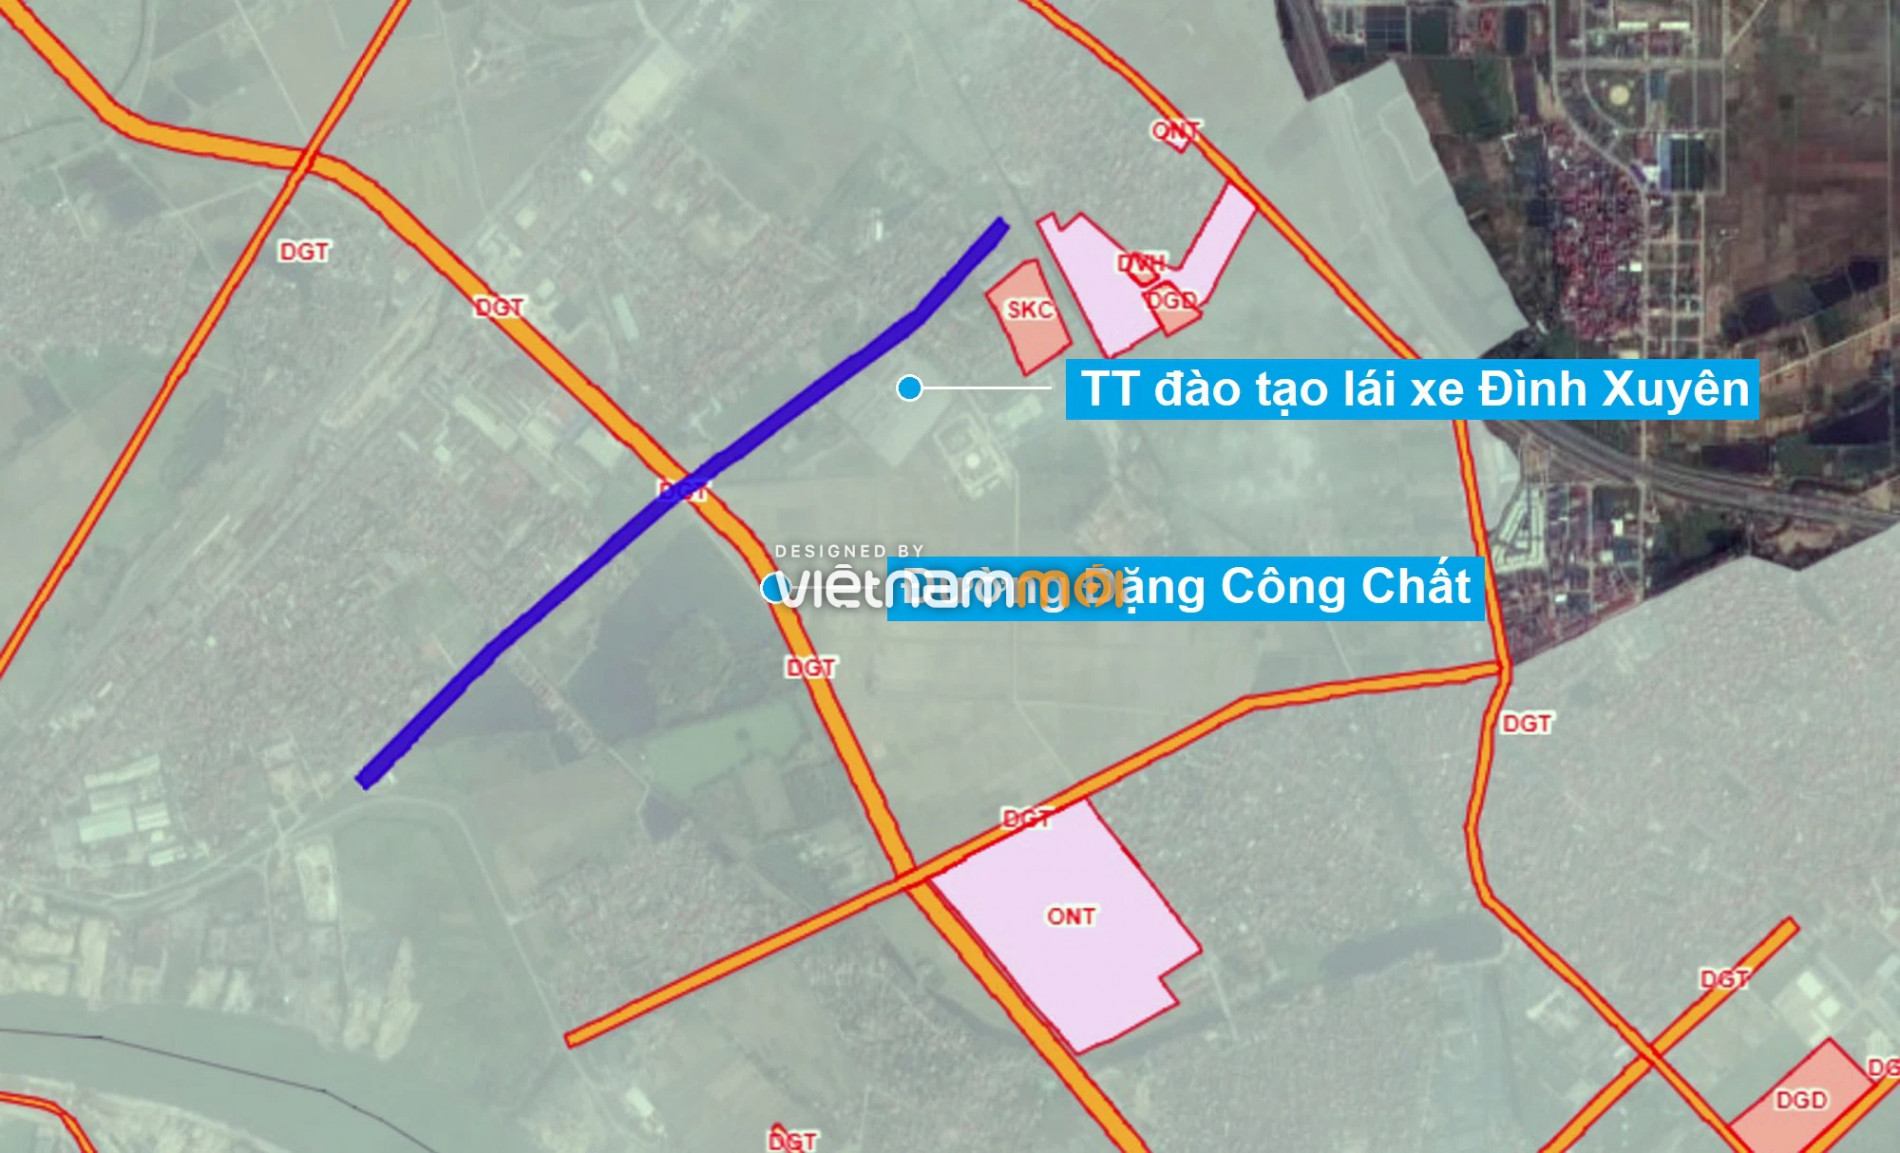 Những khu đất sắp thu hồi để mở đường ở huyện Gia Lâm, Hà Nội (phần 2) - Ảnh 13.